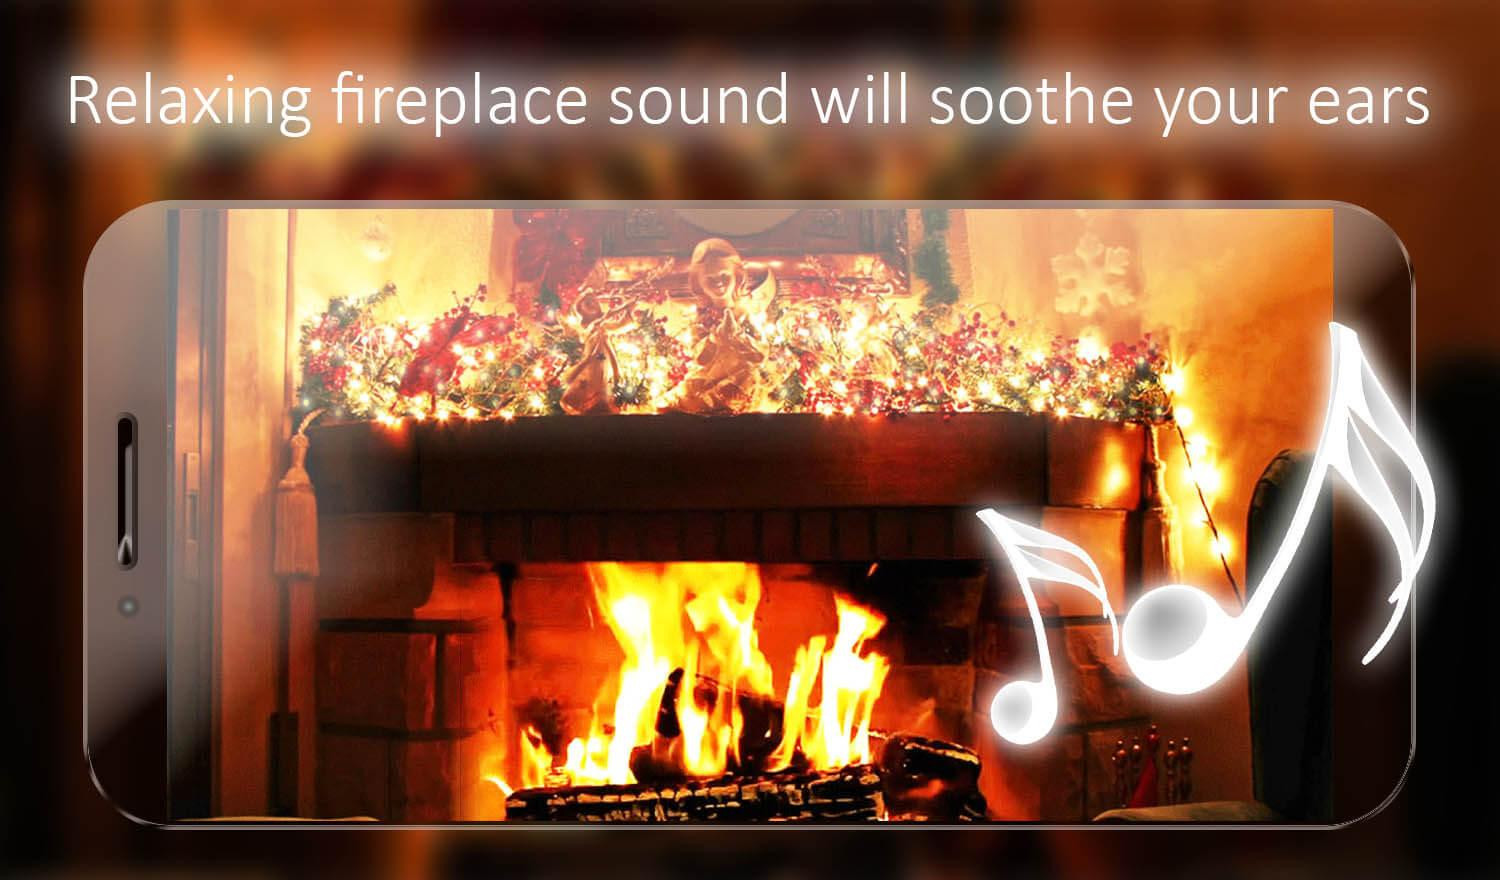 Christmas Fireplace Live Wallpaper
 Christmas Fireplace Live Wallpaper Android Apps on